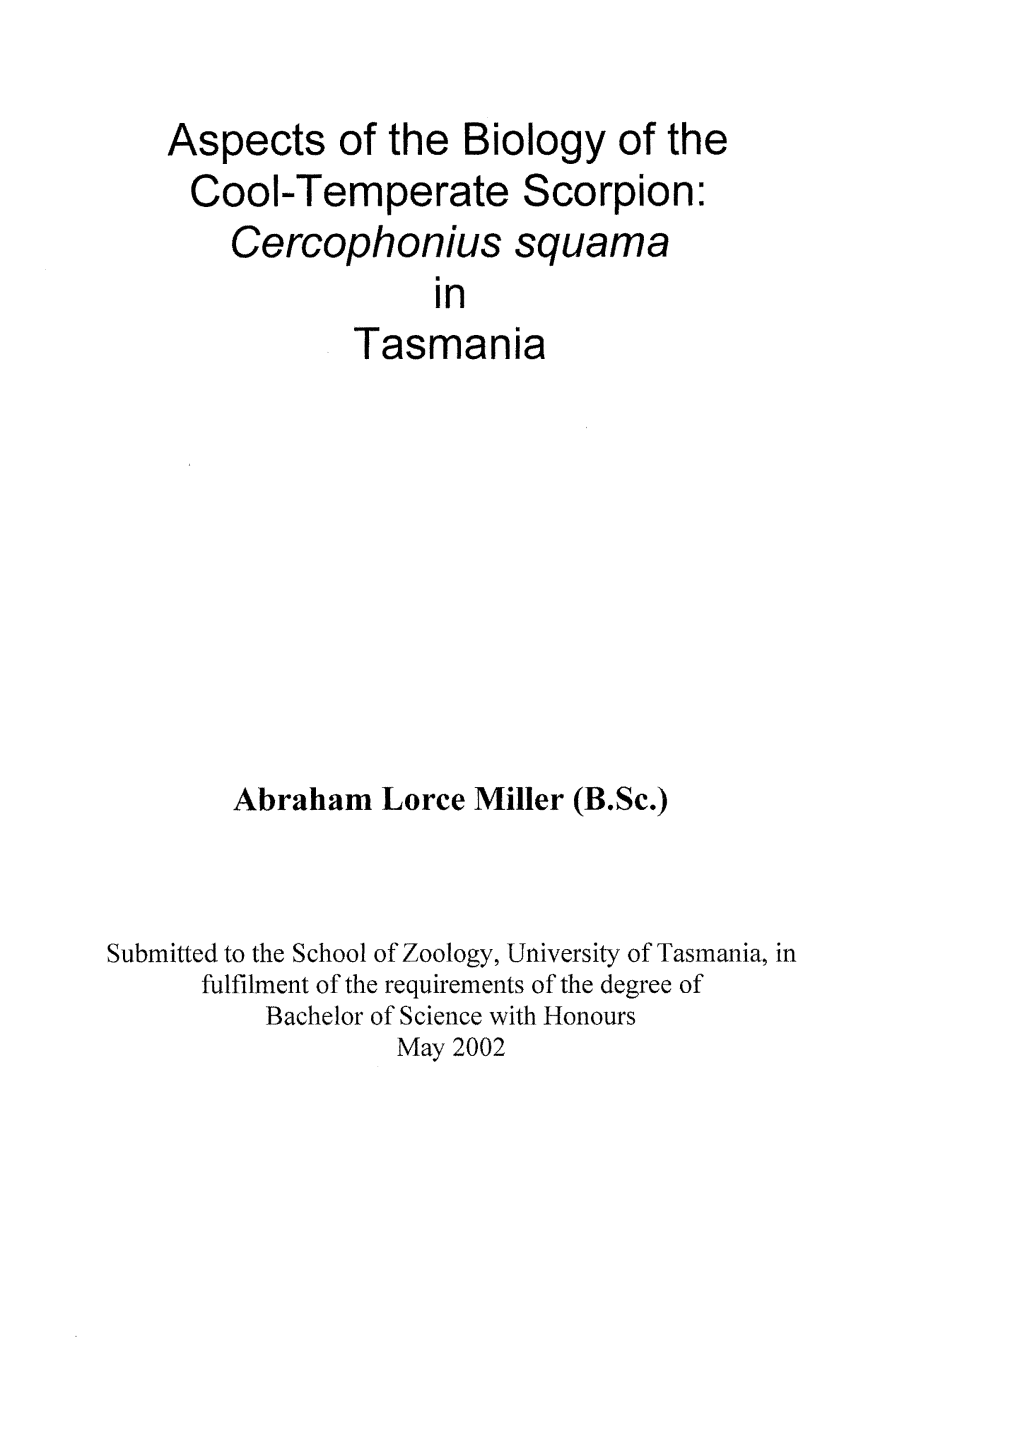 Cercophonius Squama Tasmania